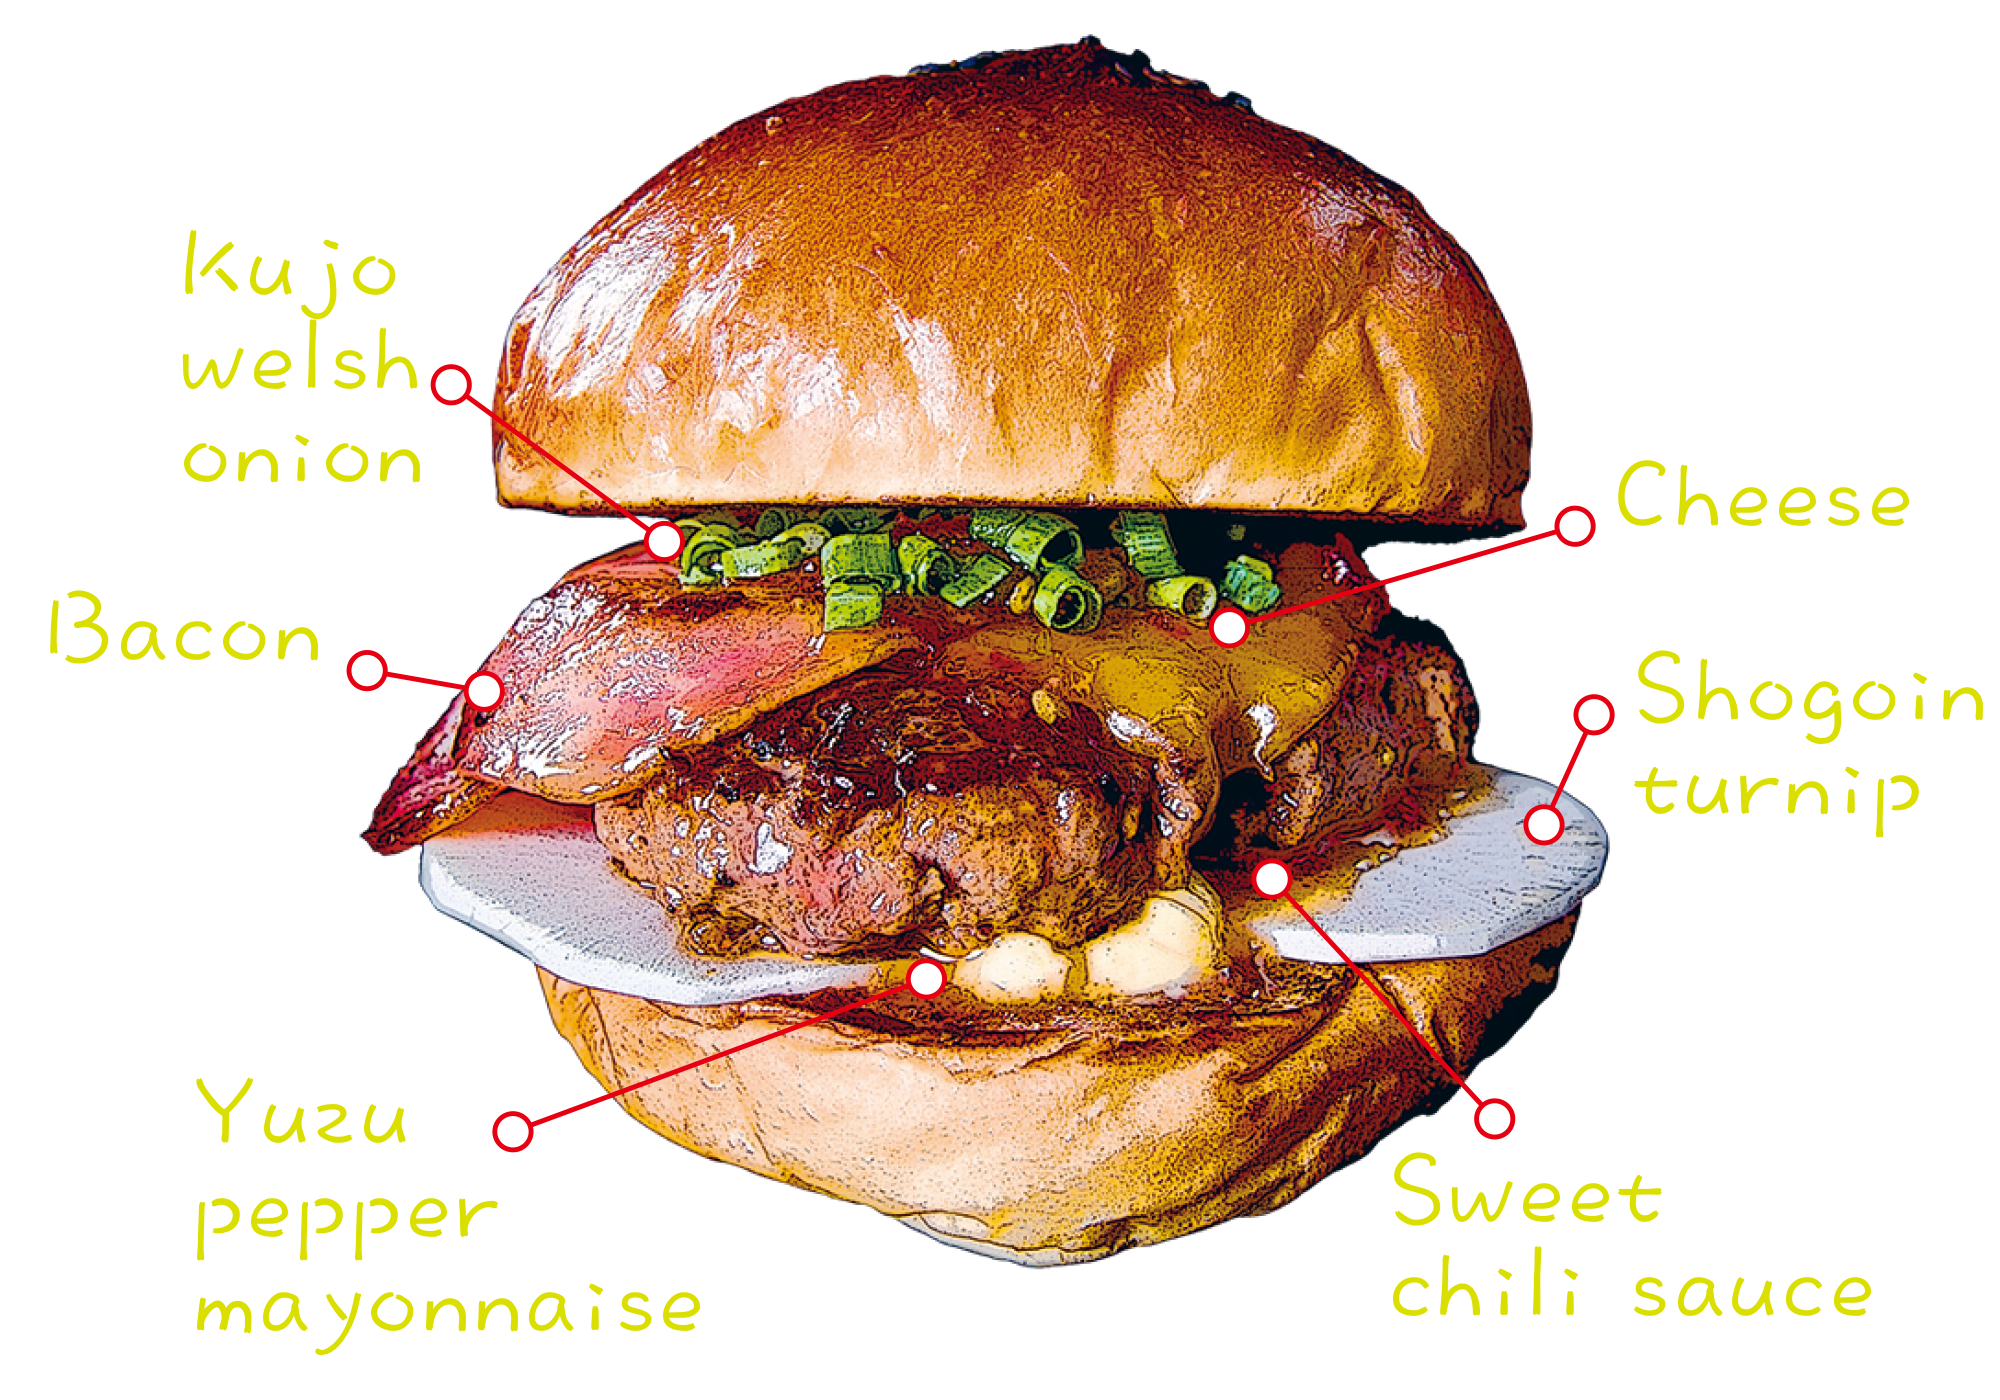 Yuzu-kosho burger